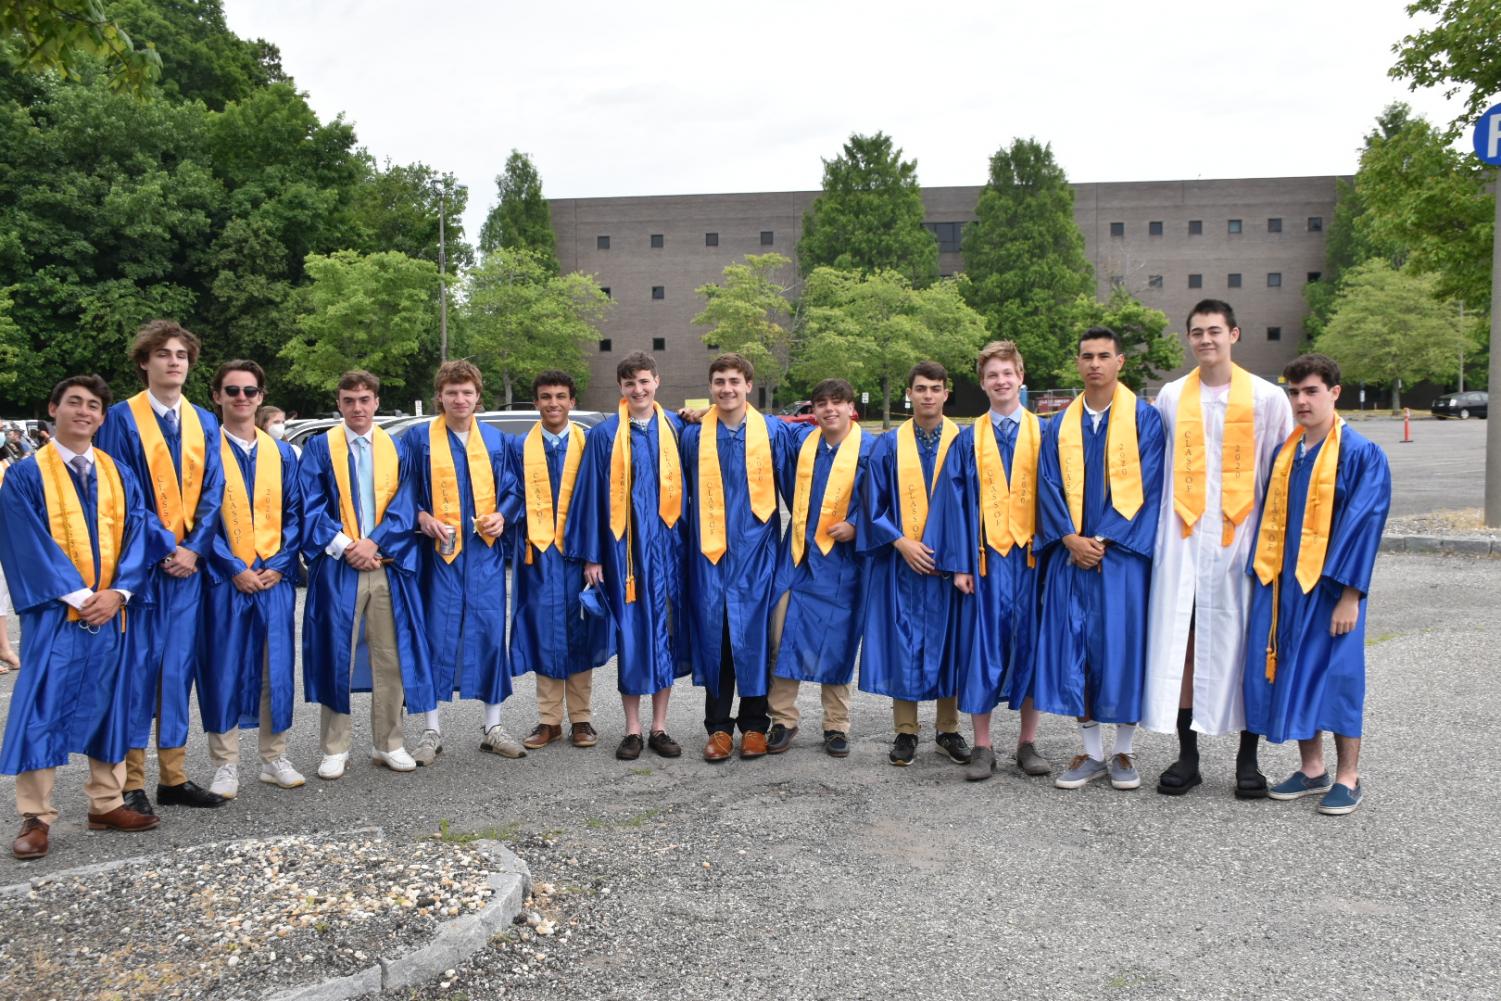 pelham-examiner-complete-list-of-2020-graduates-of-pelham-memorial